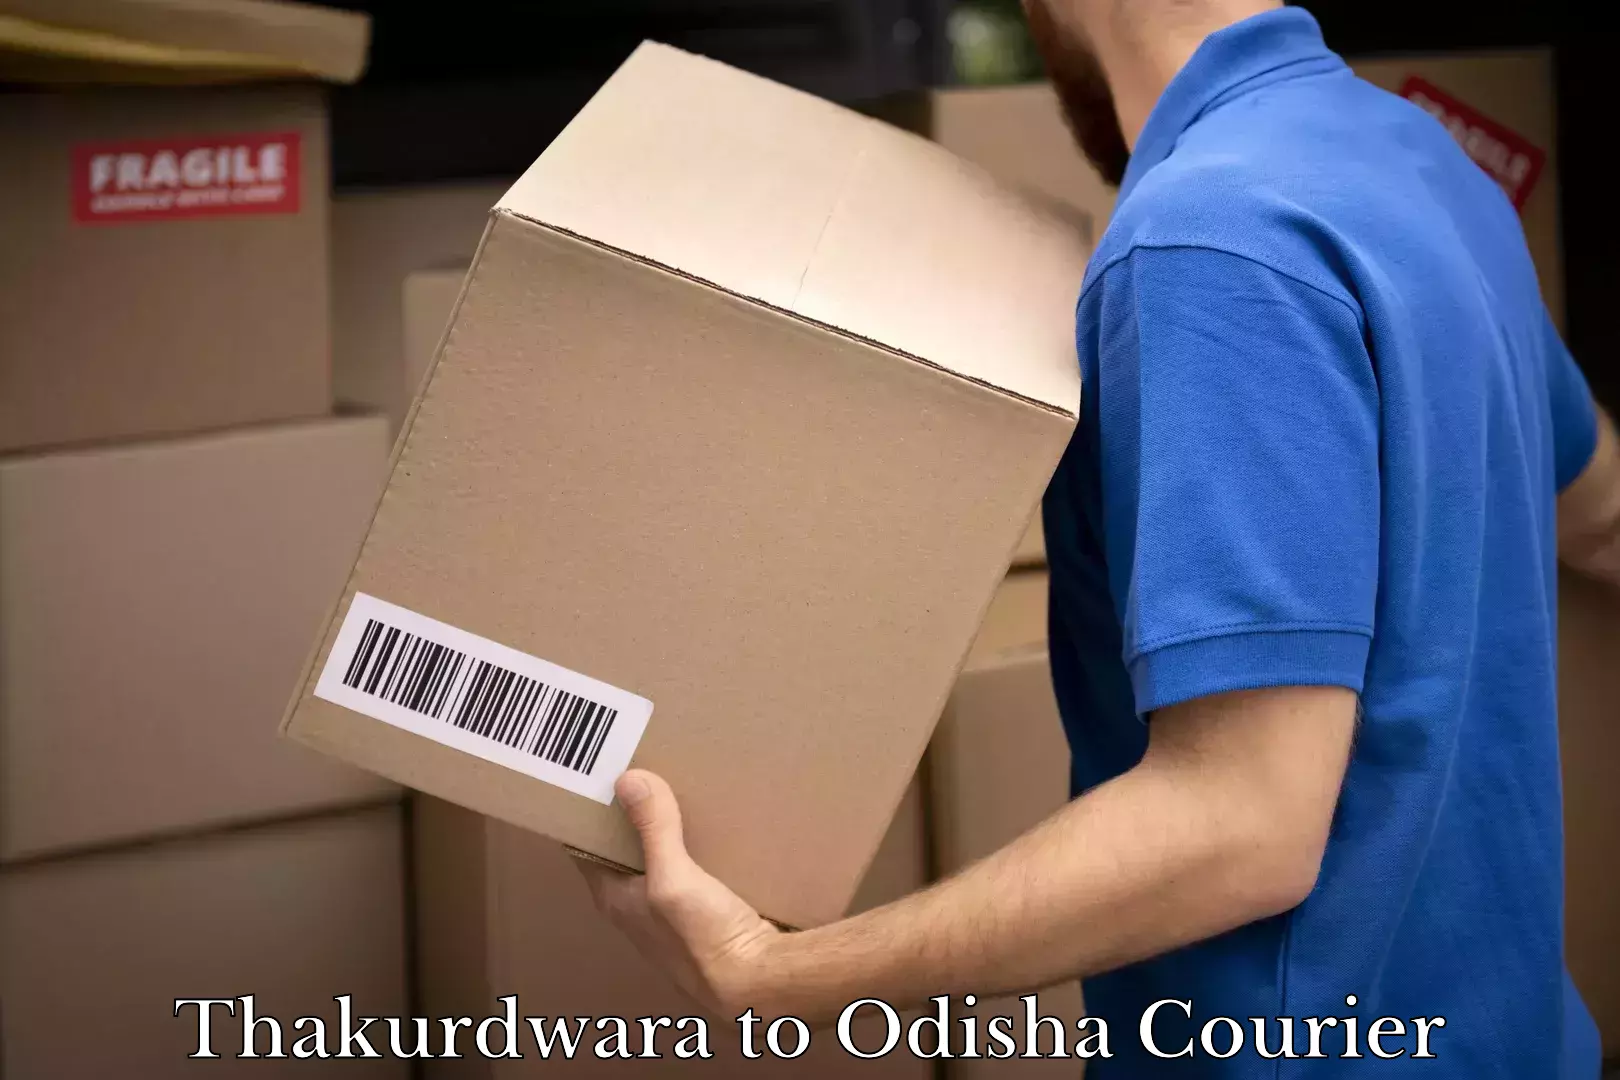 Professional courier services Thakurdwara to Odisha